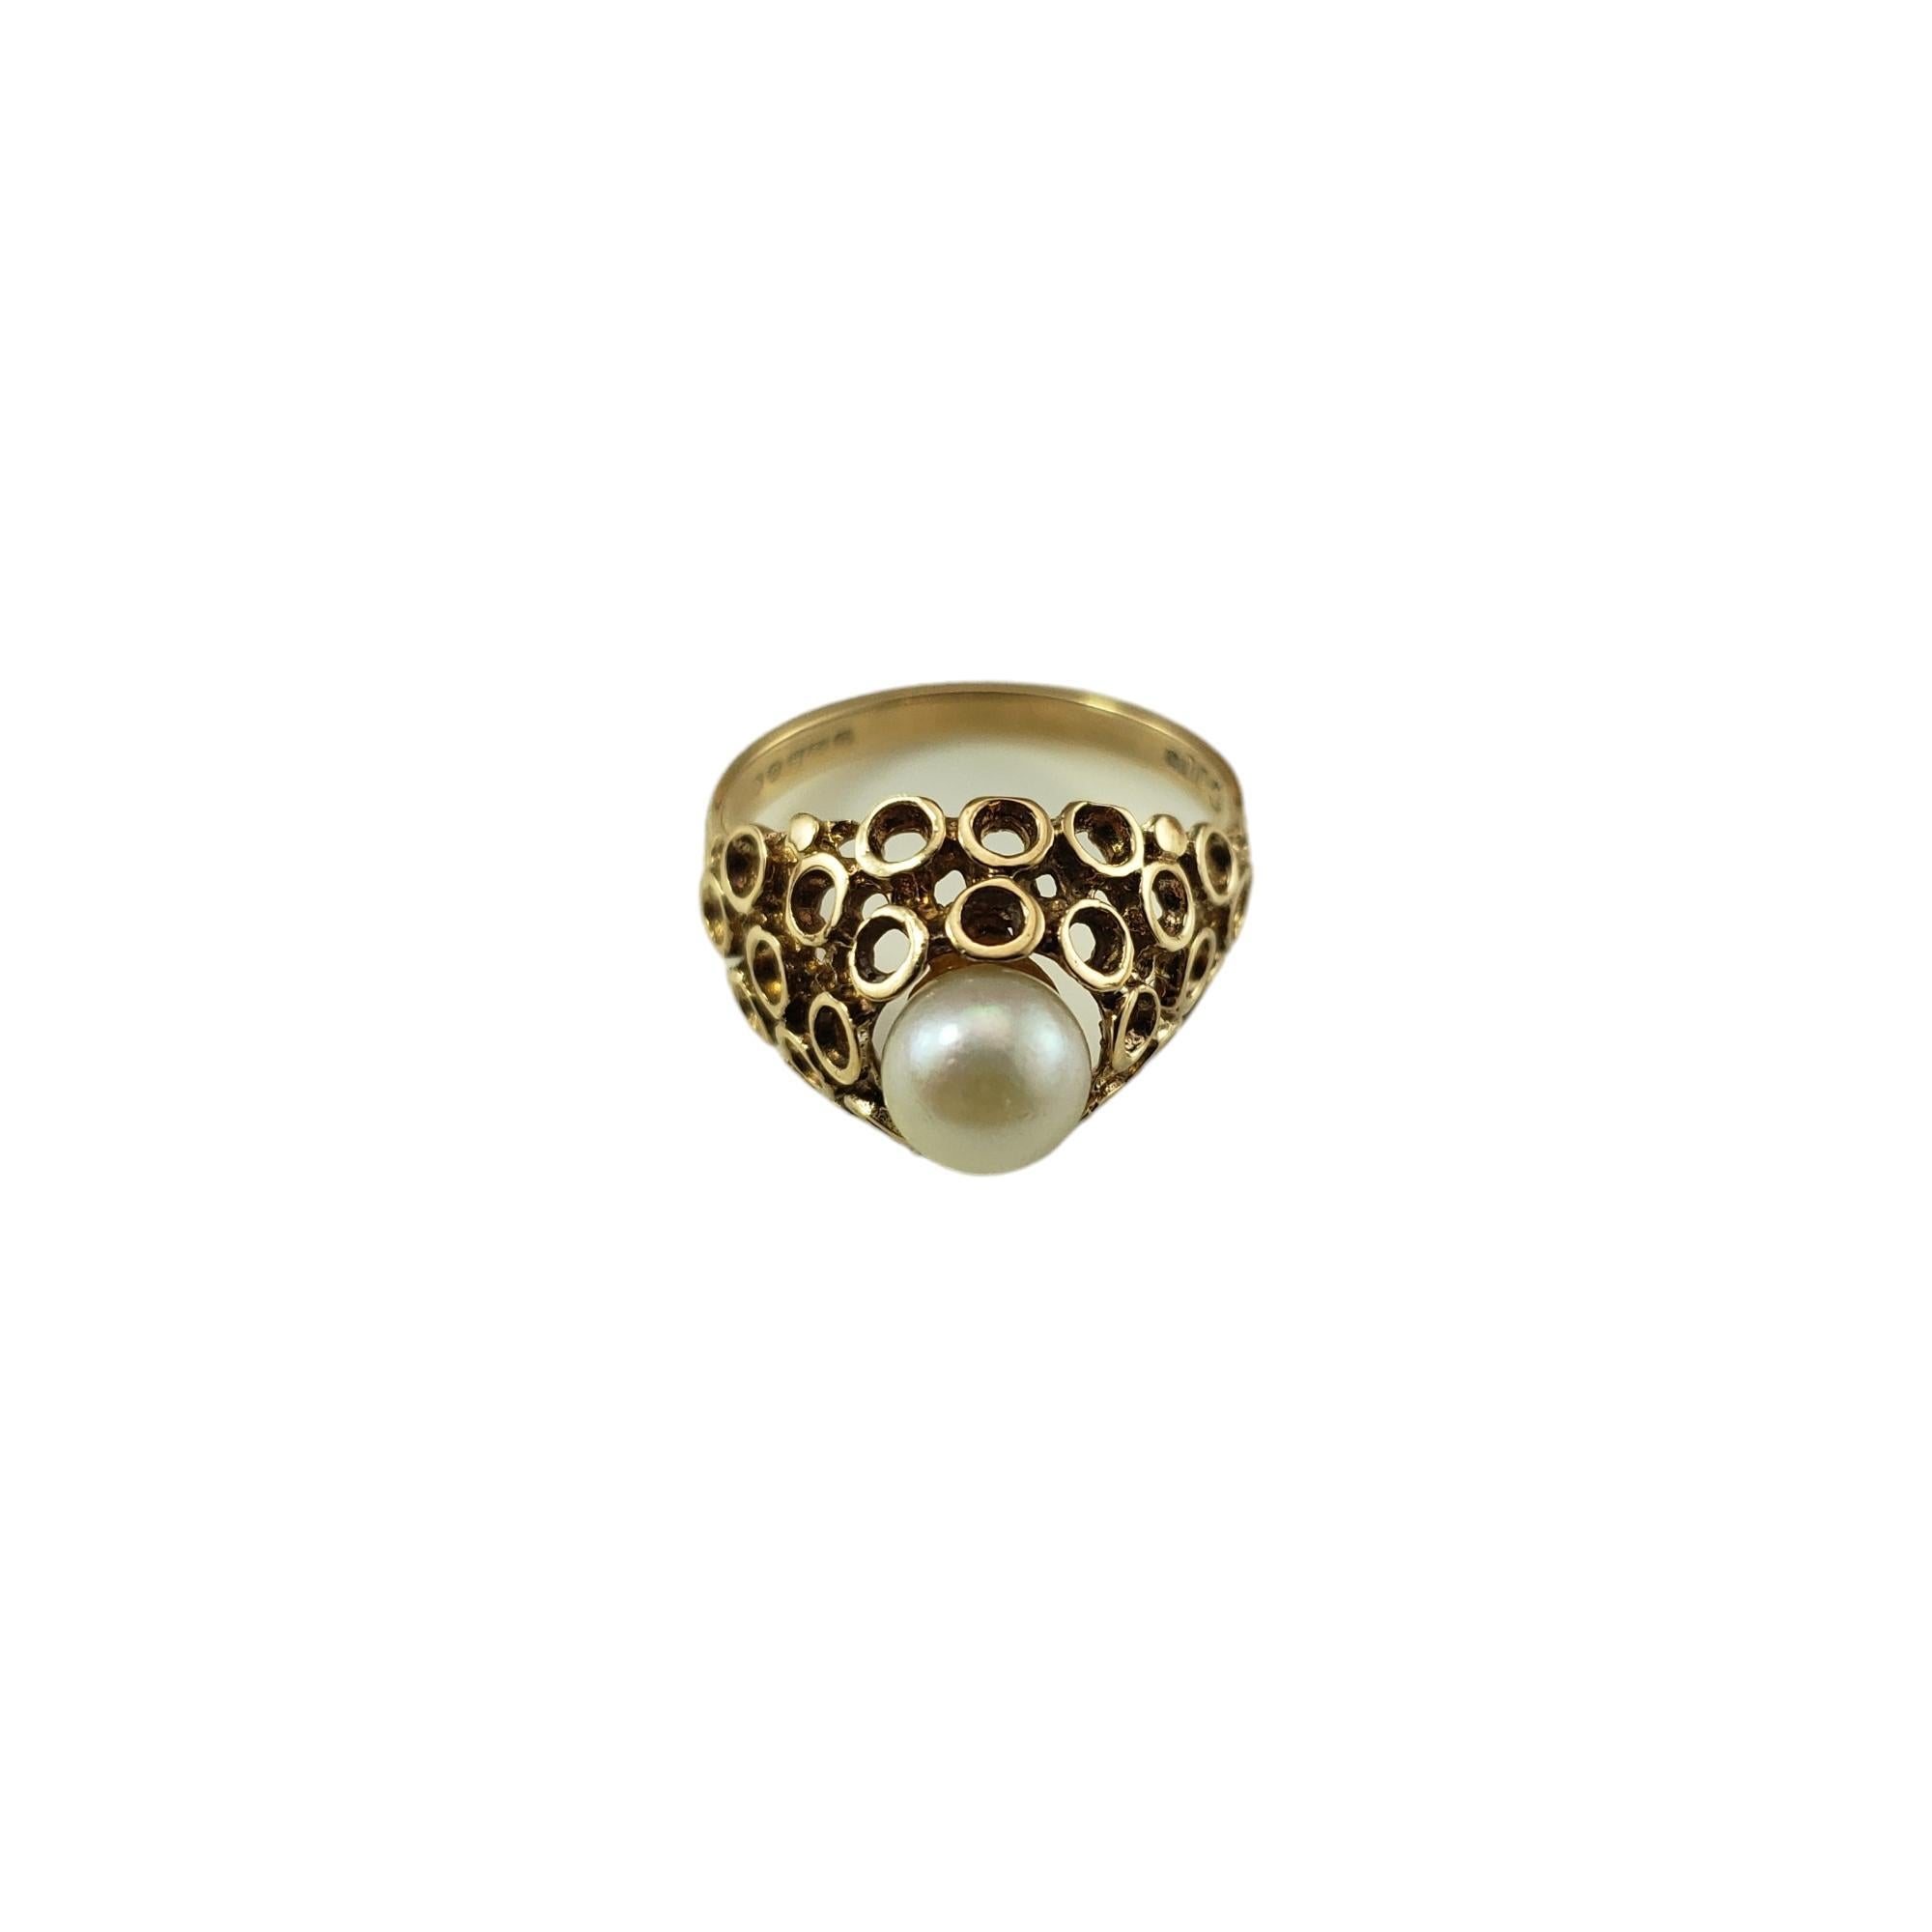 Vintage 9K Gelbgold Perlenring Größe 6-

Dieser schöne Ring enthält eine runde weiße Perle (6 mm), die in wunderschön detailliertes 9K Gelbgold gefasst ist.  Breite: 12 mm.
Schaft: 2 mm.

Ringgröße: 6

Gestempelt: 9  375  

Gewicht: 1,6 dwt./2,5